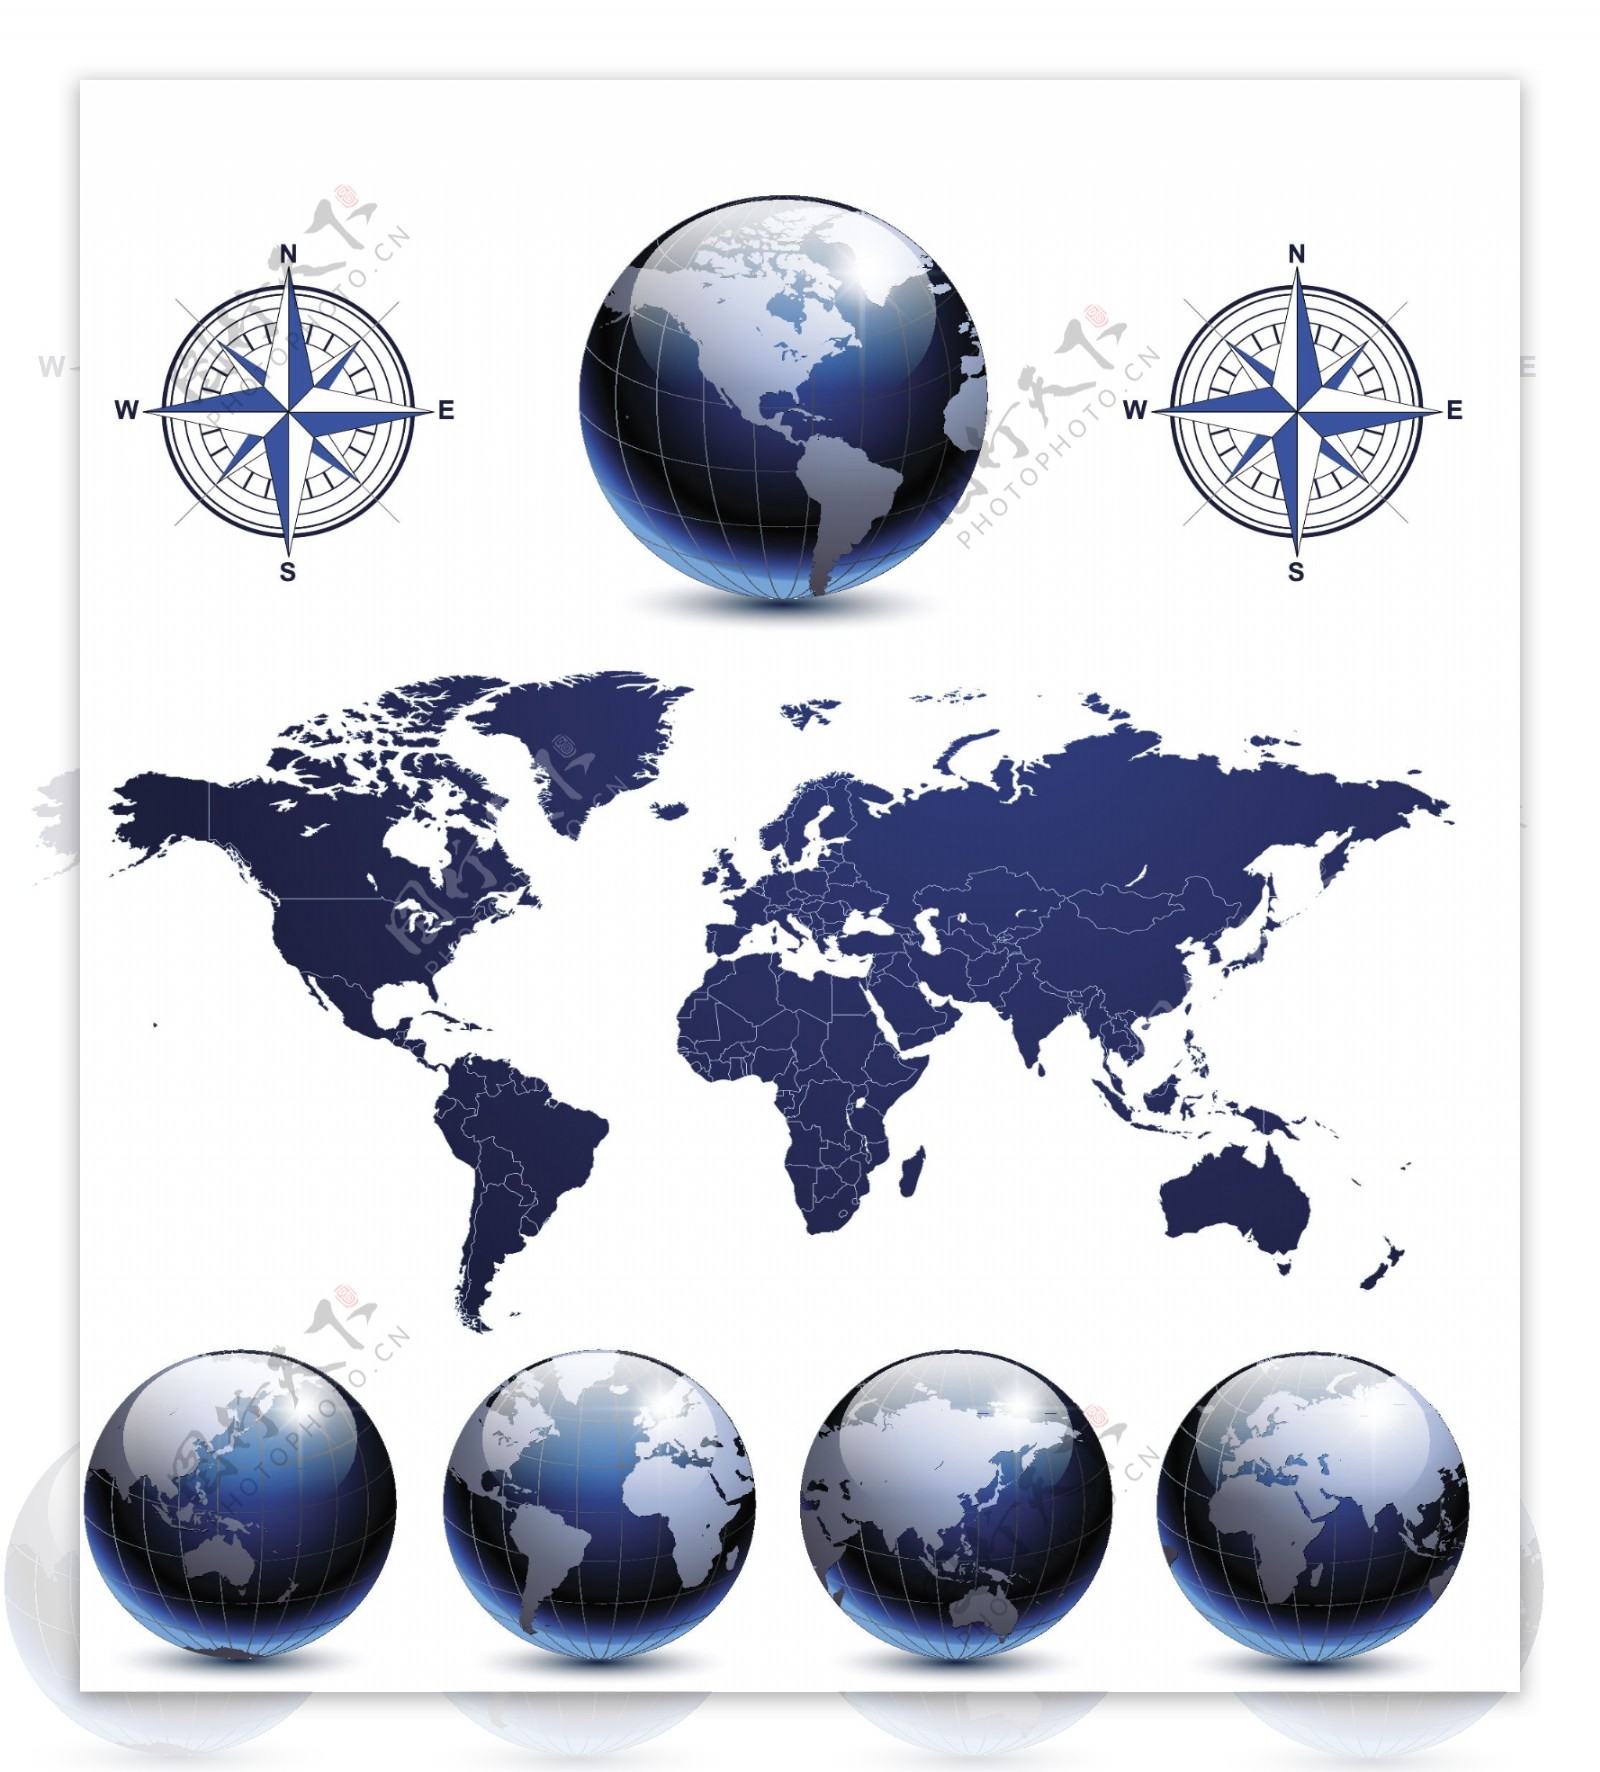 矢量地球地图指南针